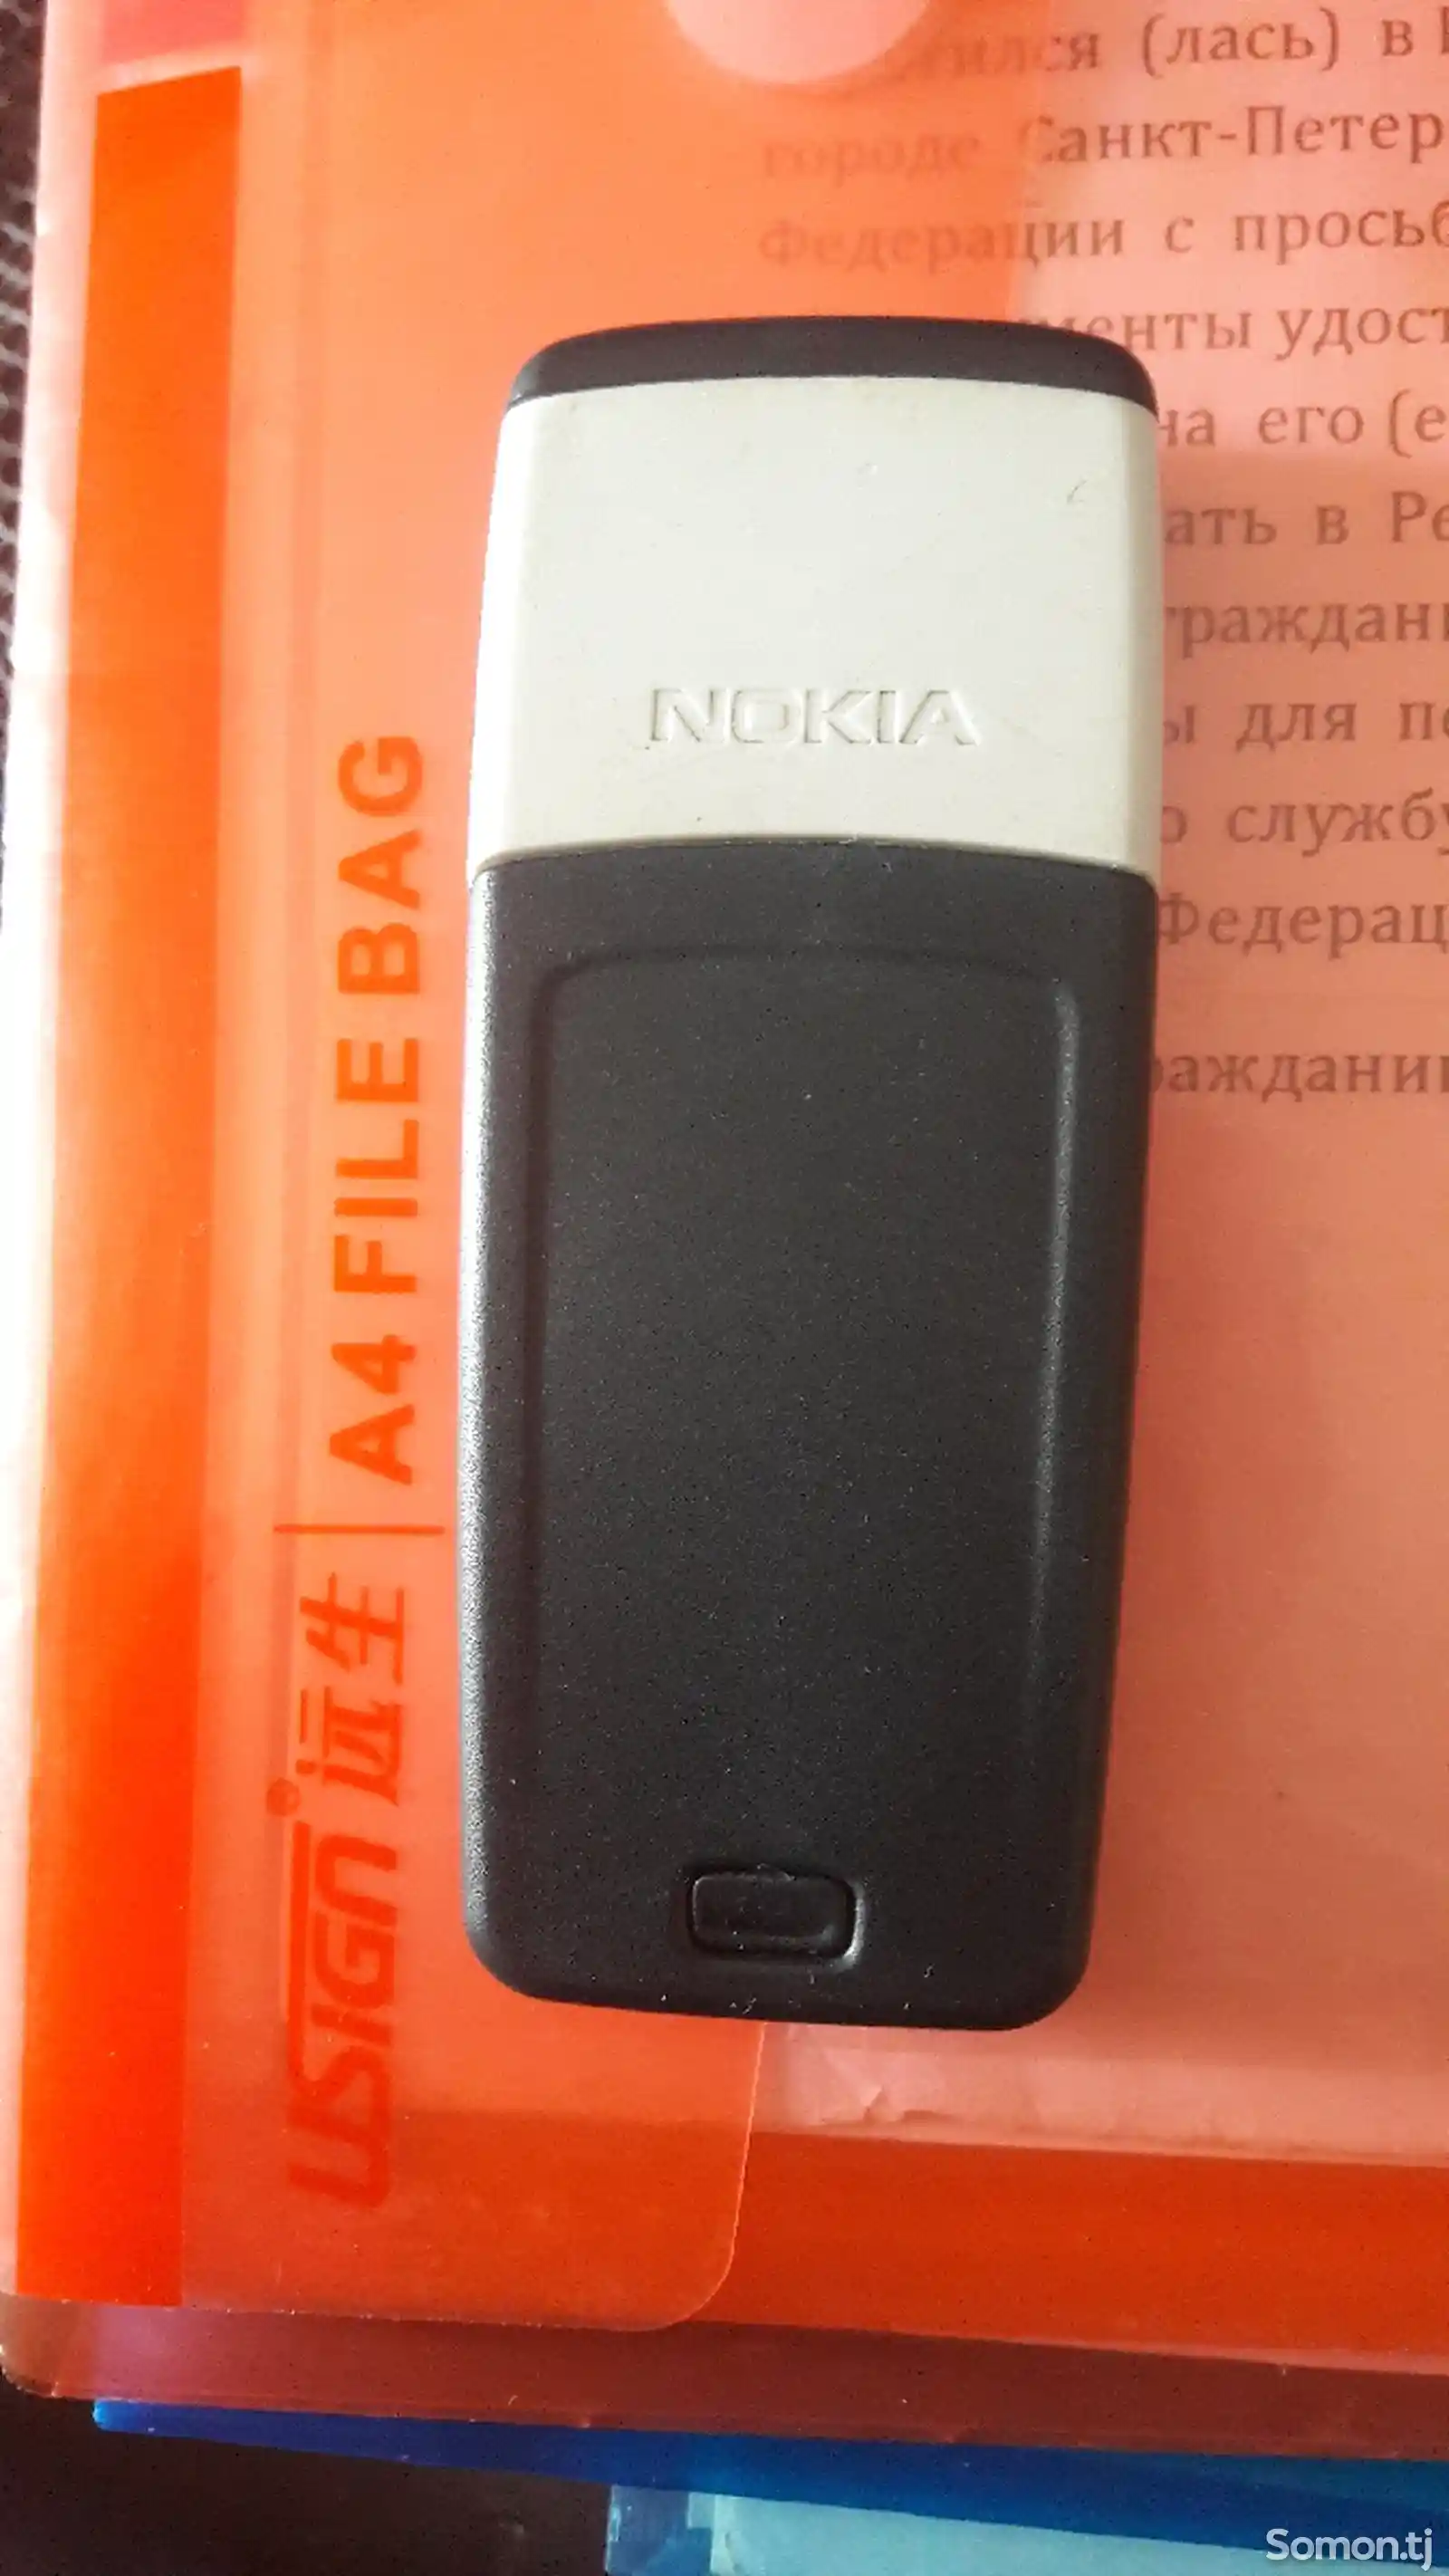 Nokia 1112-4